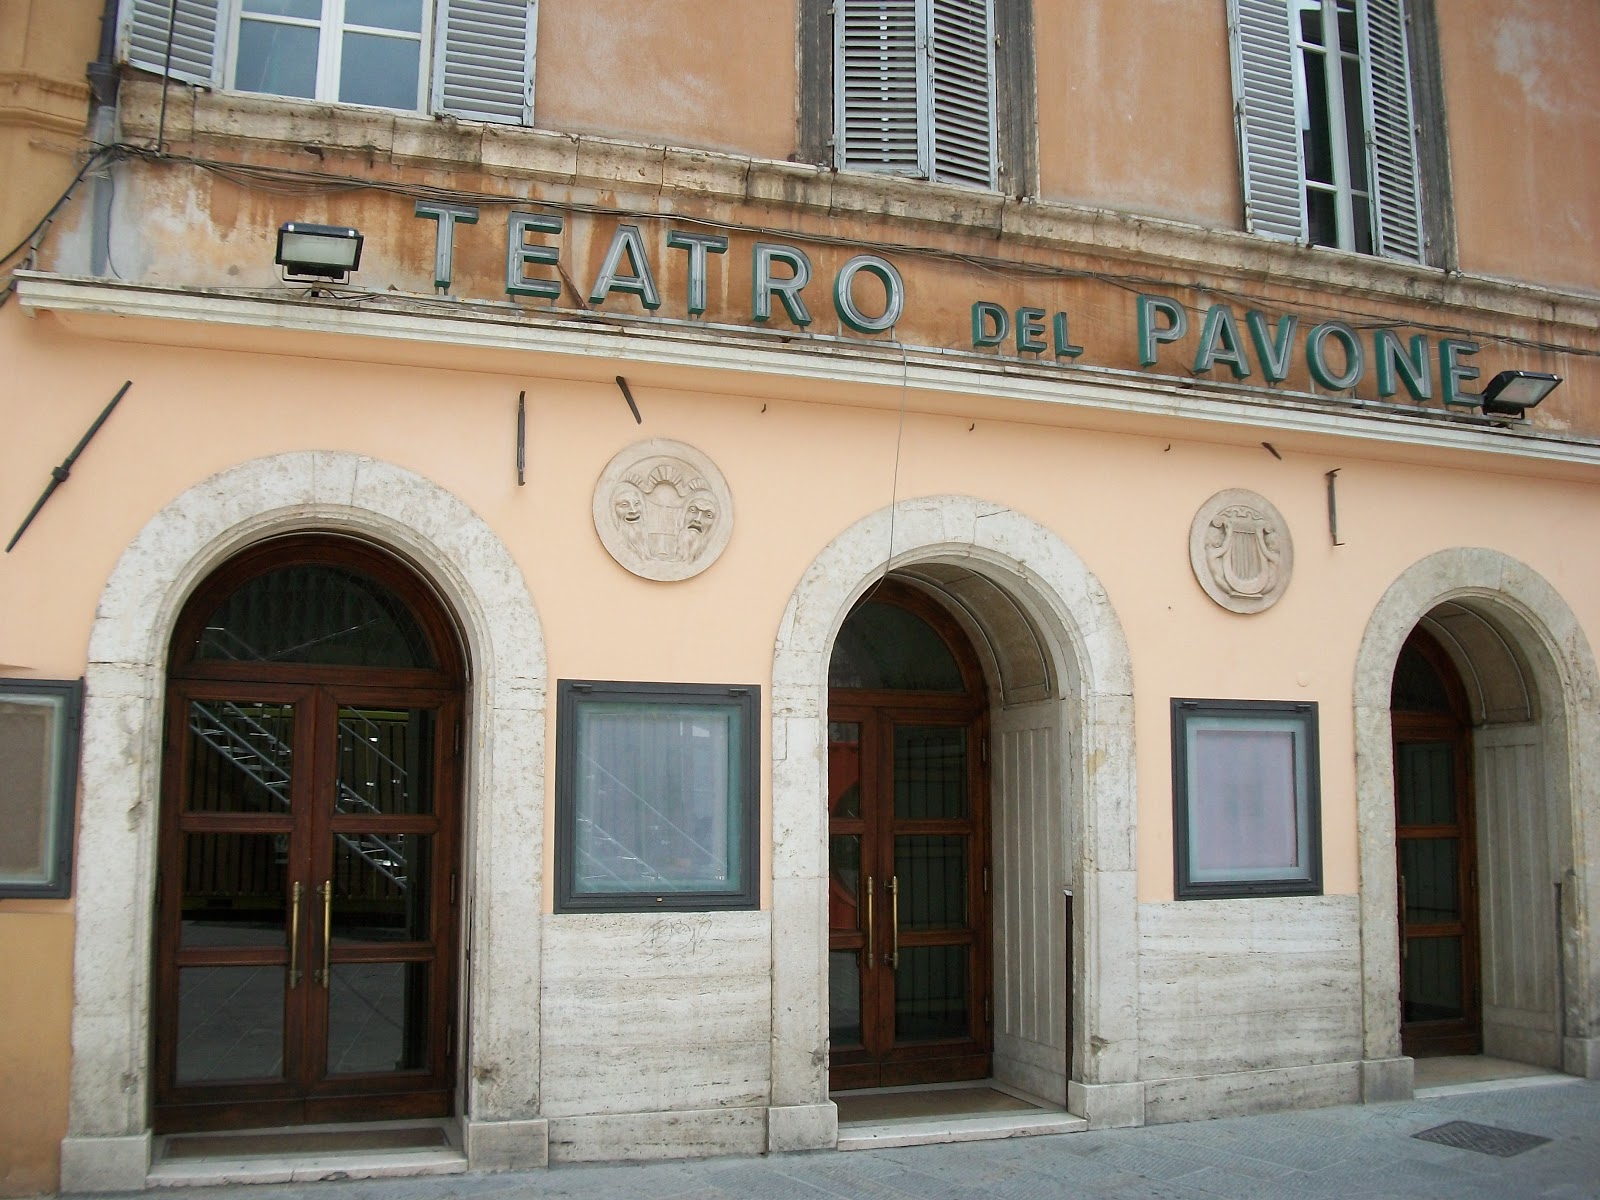 Teatro del Pavone